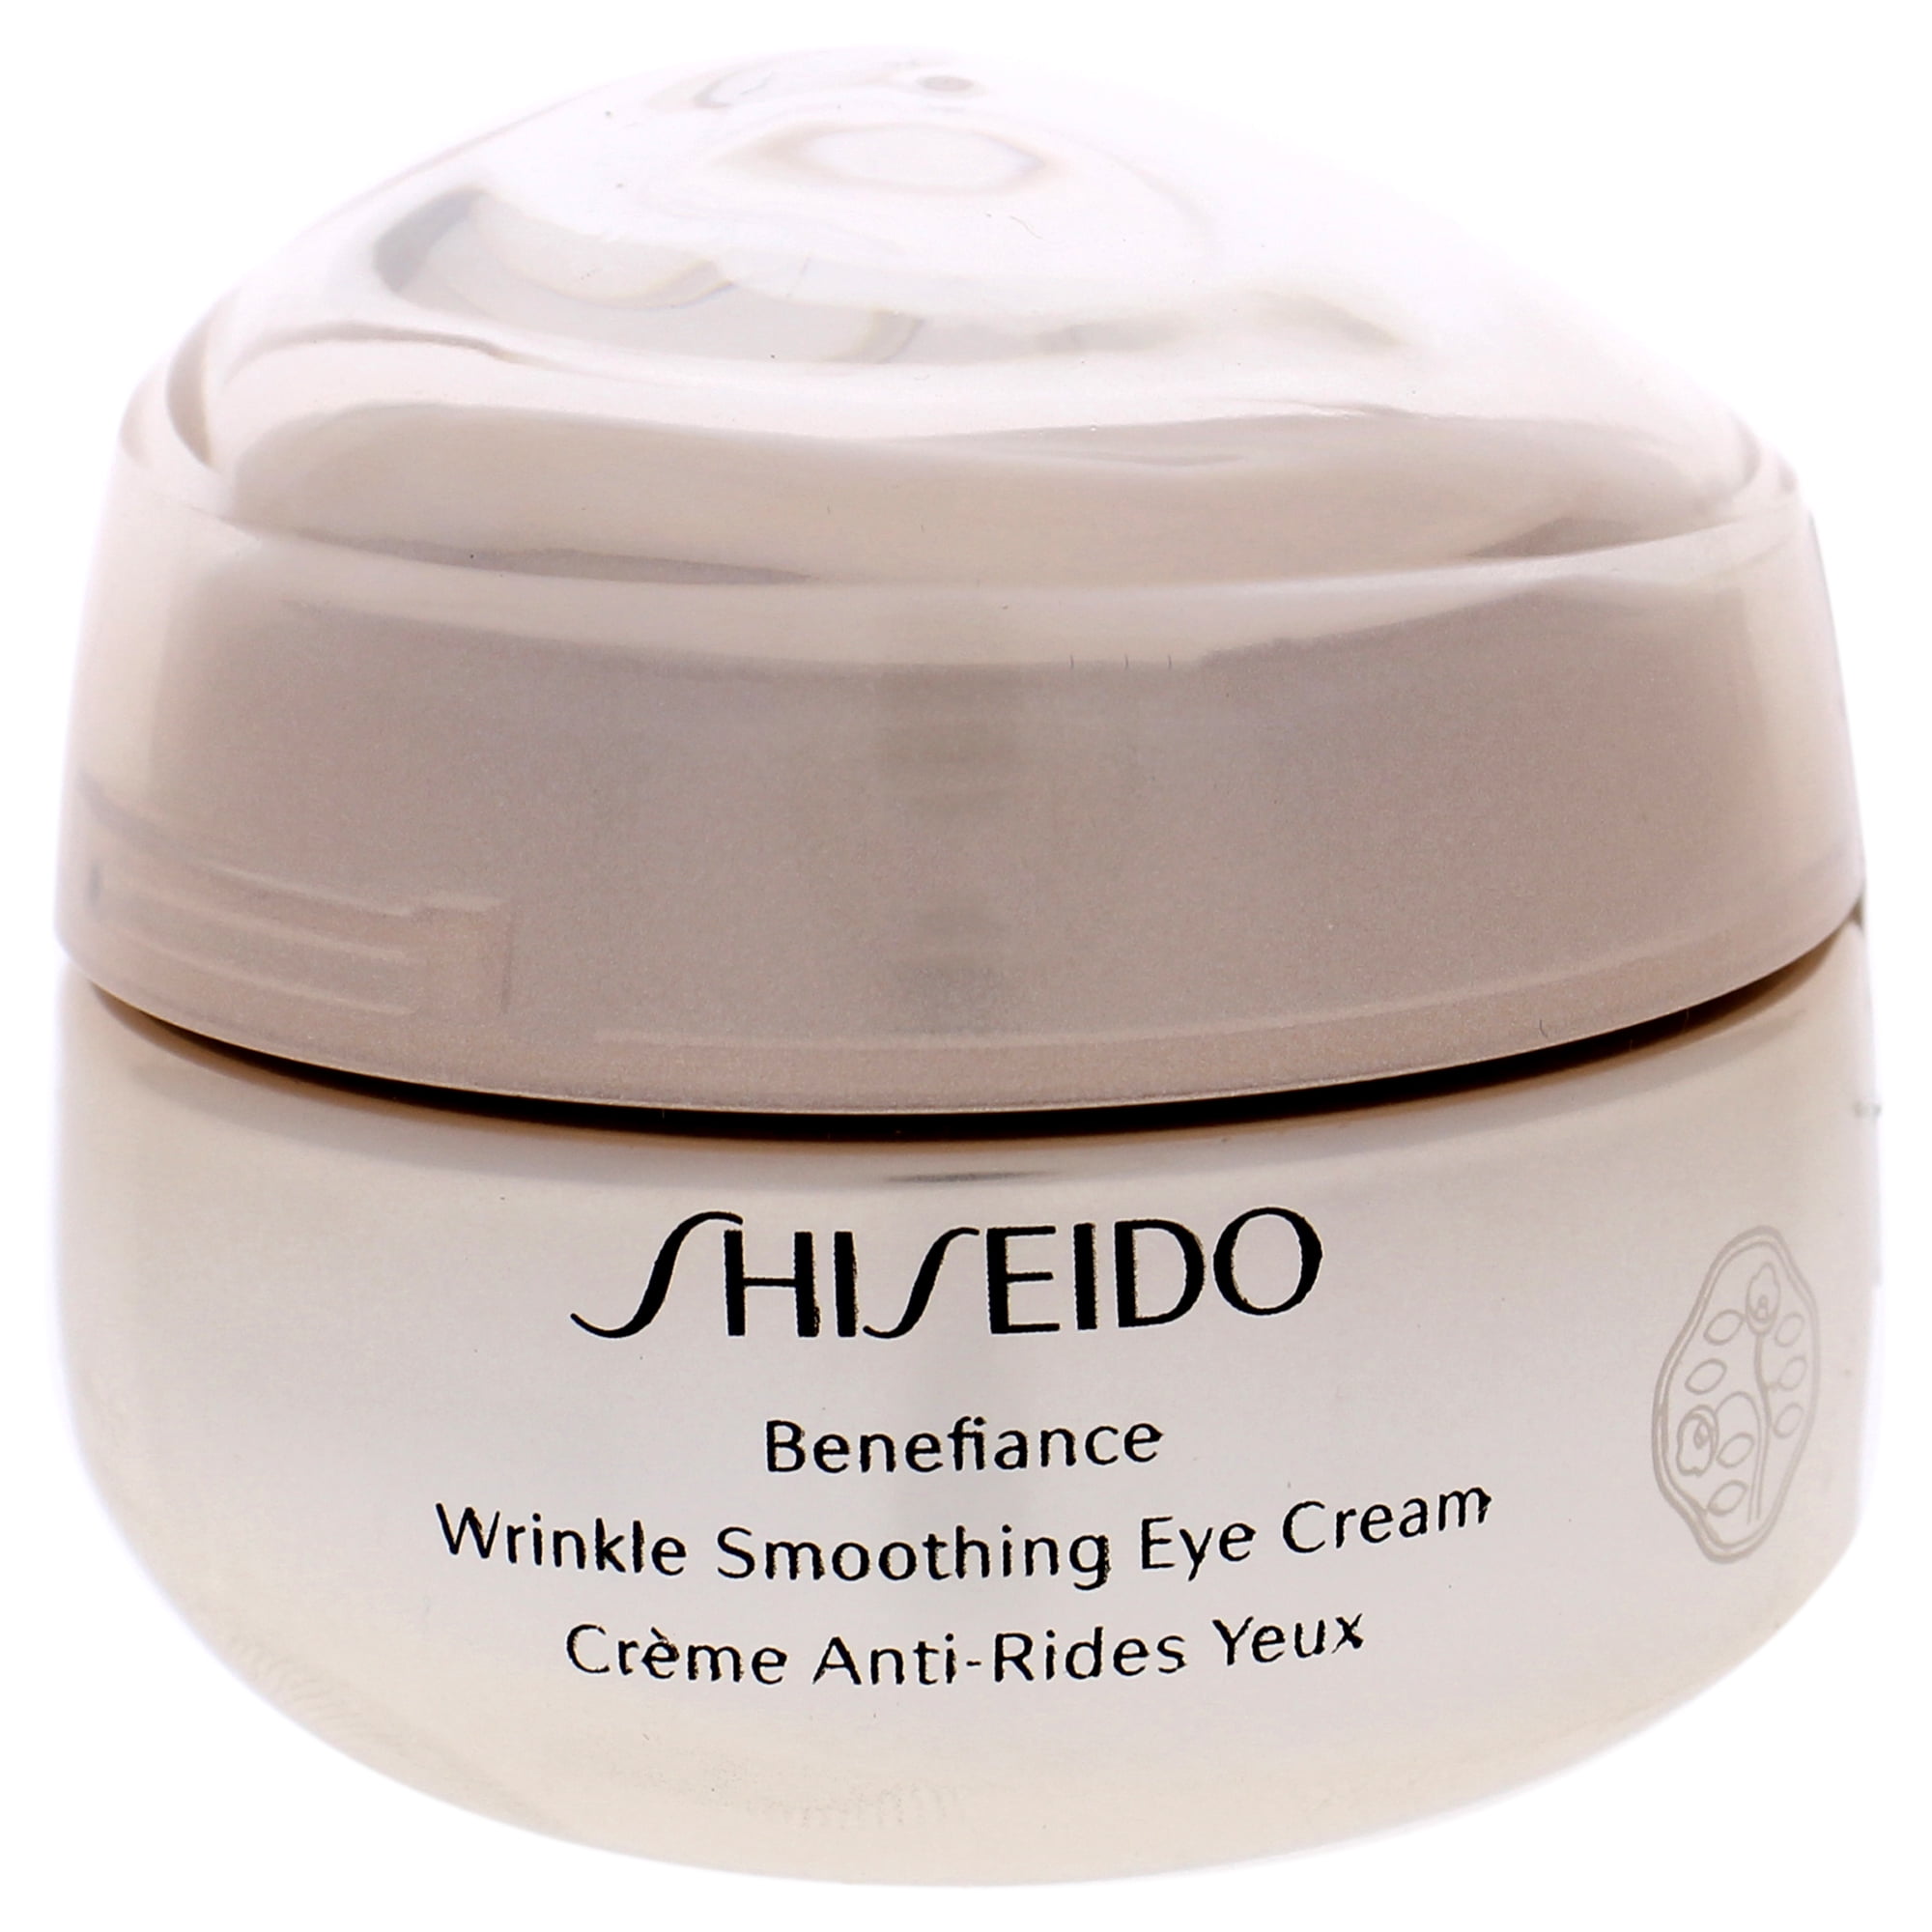 Shiseido Benefiance Eye Cream. Shiseido // крем Benefiance Wrinkle Smoothing Eye Cream 15ml. Shiseido Wrinkle Smoothing Cream. Корейский косметика Eye Cream Byaning. Shiseido benefiance wrinkle smoothing